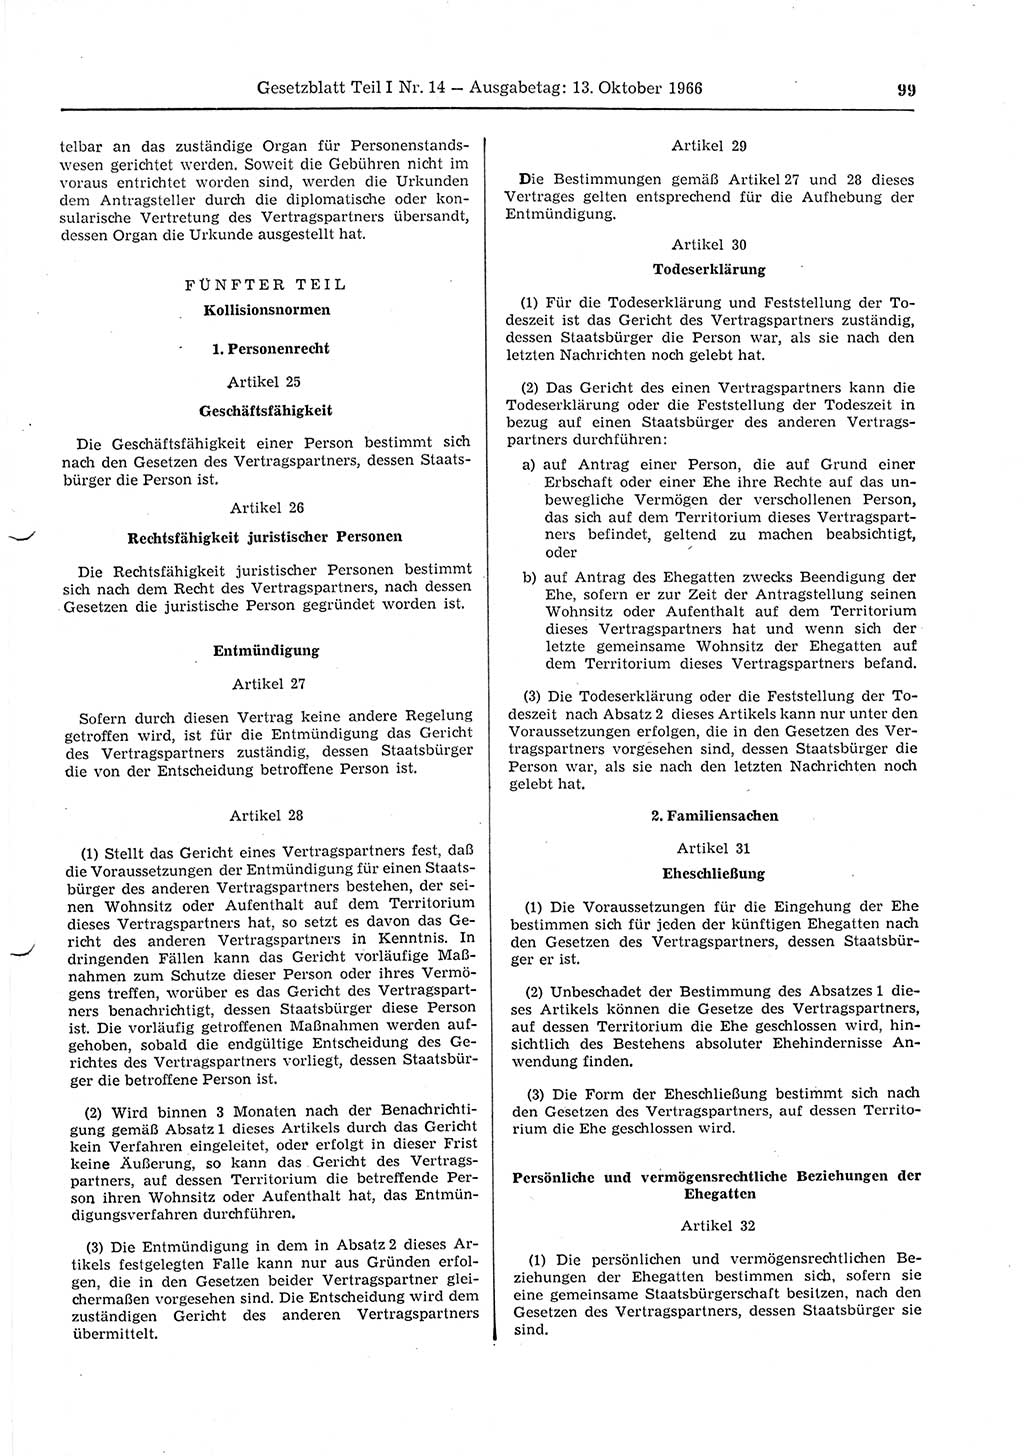 Gesetzblatt (GBl.) der Deutschen Demokratischen Republik (DDR) Teil Ⅰ 1966, Seite 99 (GBl. DDR Ⅰ 1966, S. 99)